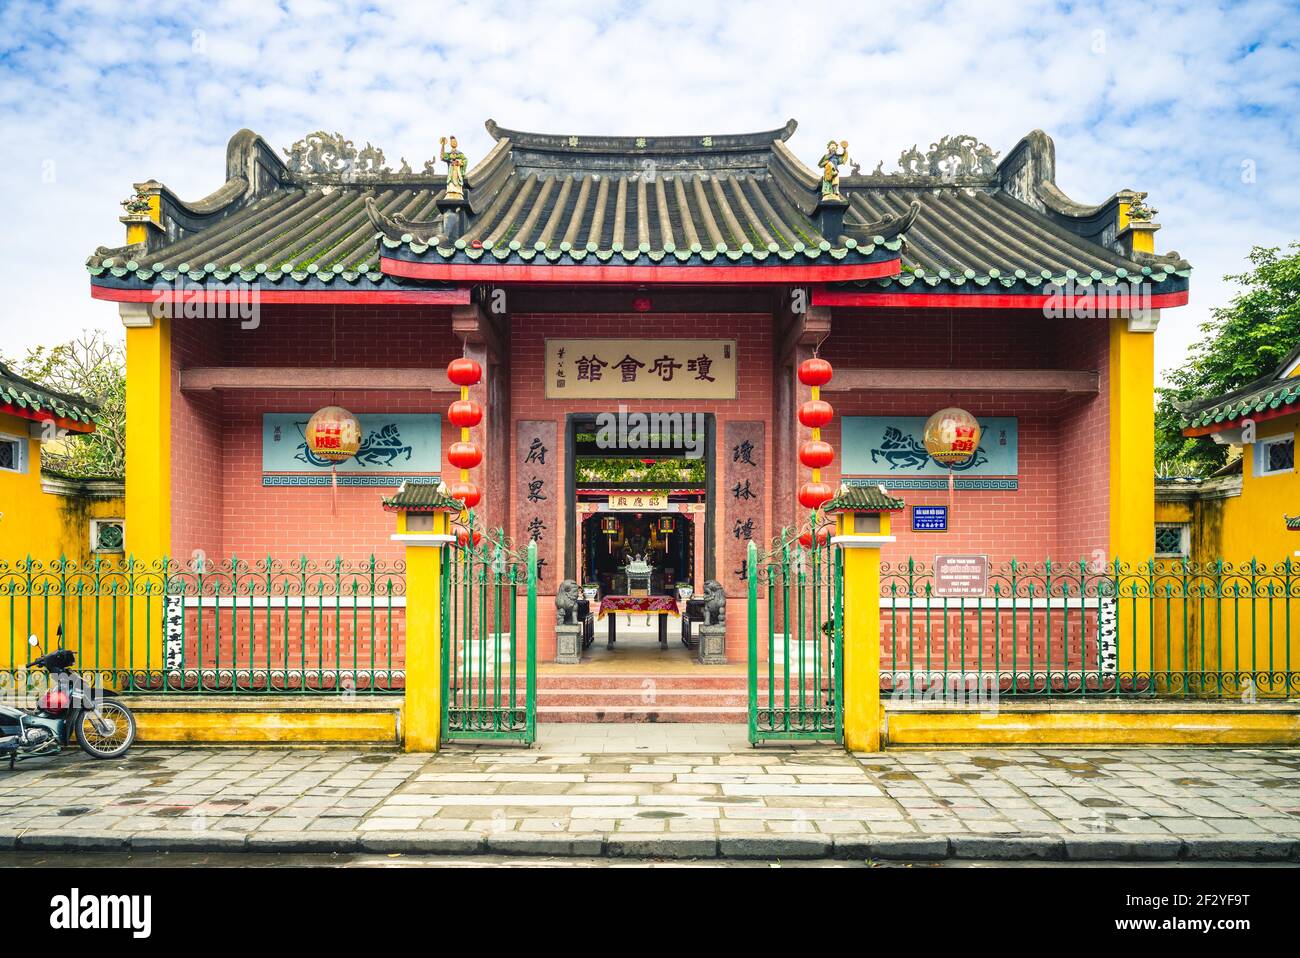 1er janvier 2018 : la salle d'Assemblée de la Congrégation chinoise de Hainan, construite en 1851, est un mémorial à 108 marchands de l'île de Hainan qui ont été confondus Banque D'Images